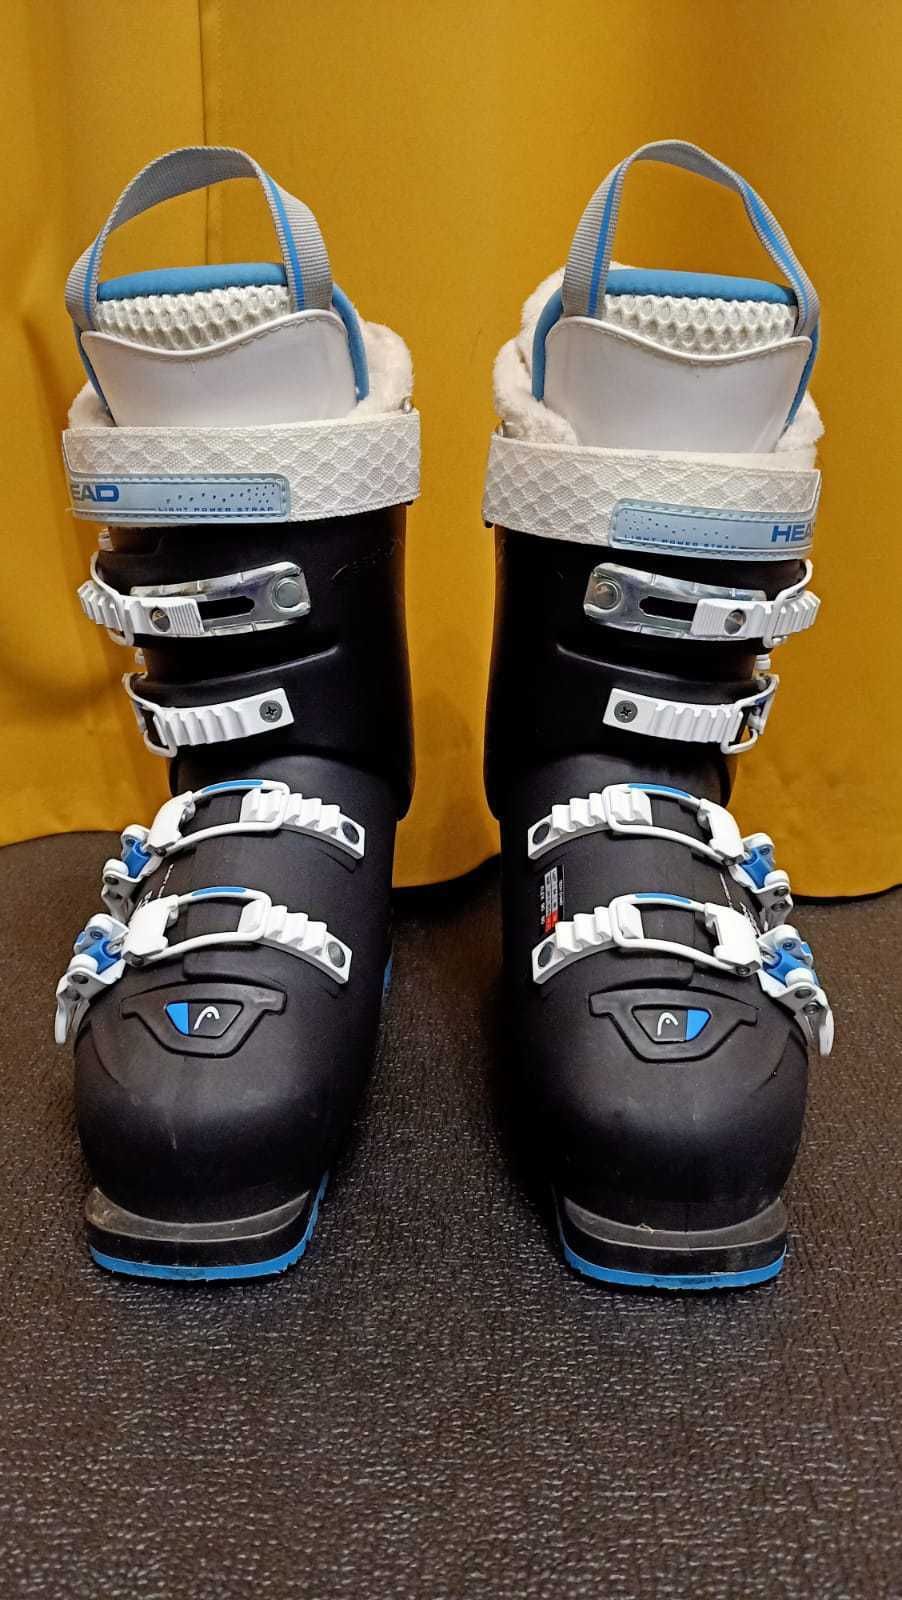 Damskie buty narciarskie Head Vector RS. Rozmiar 23,5. Flex 80/90.